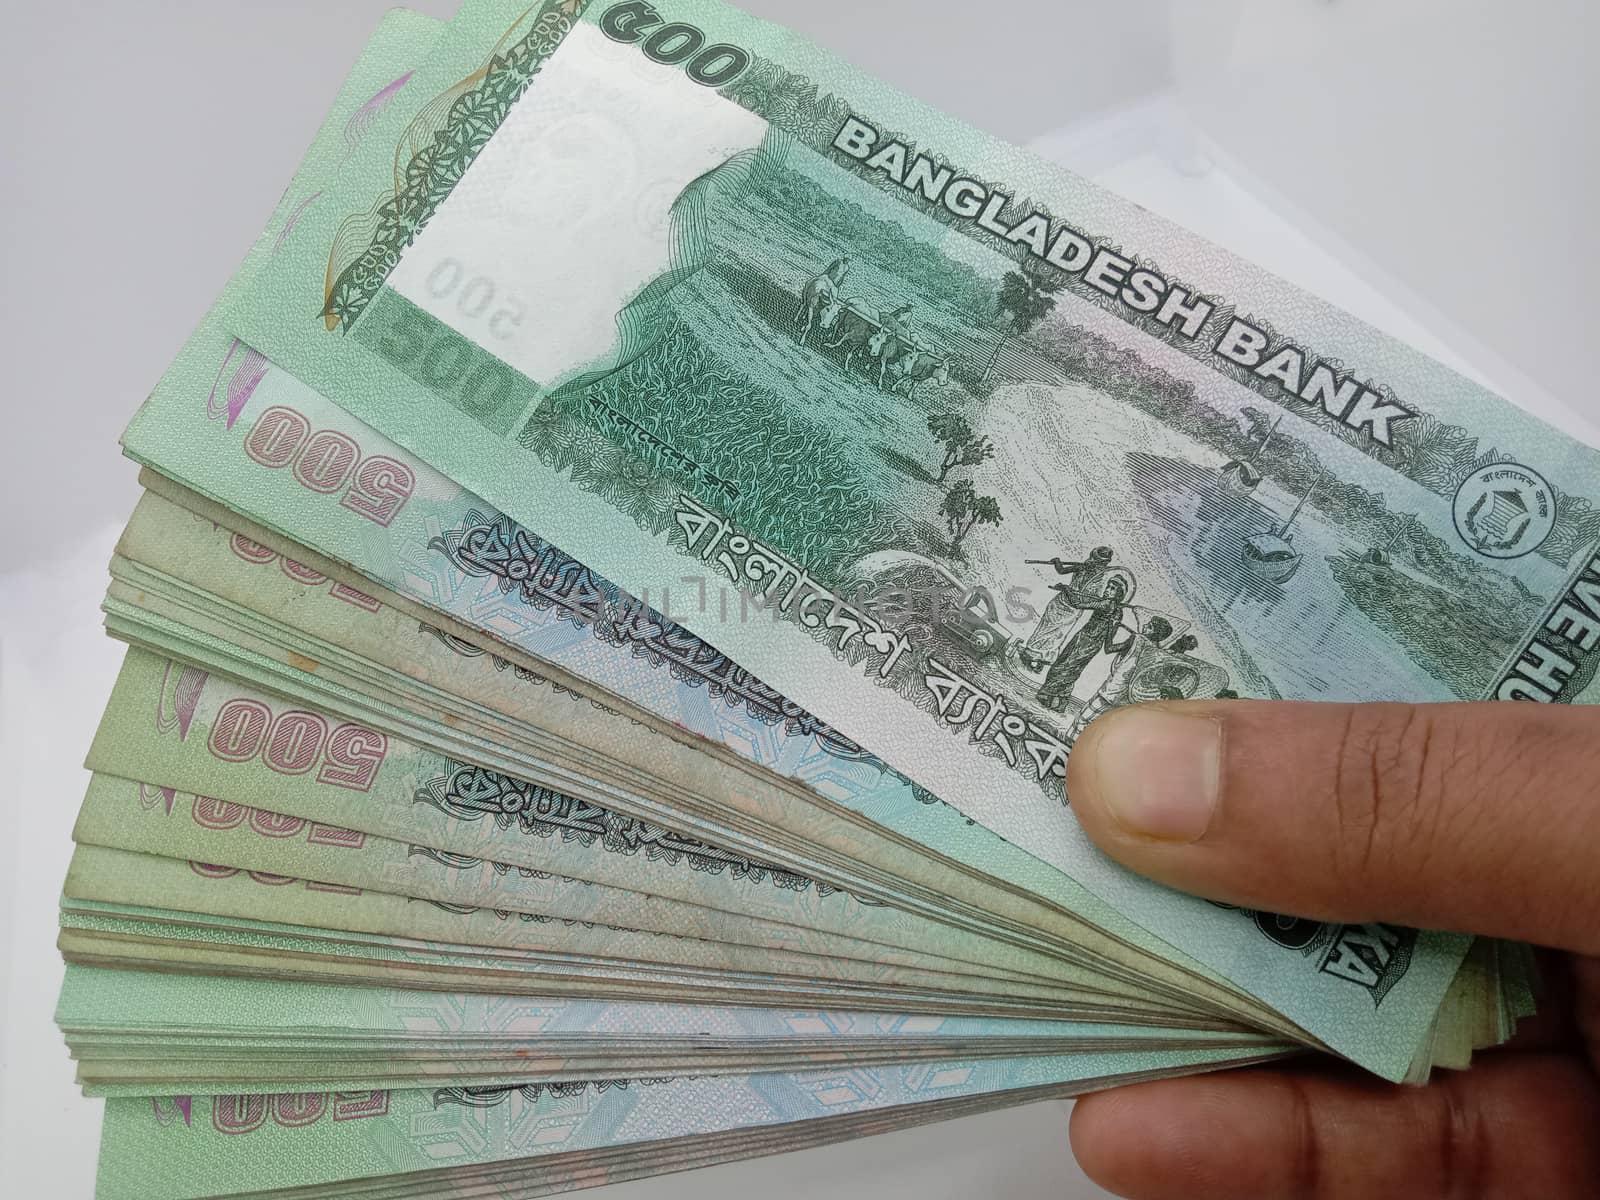 Bangladeshi 500 hundred bank note bundle on white background